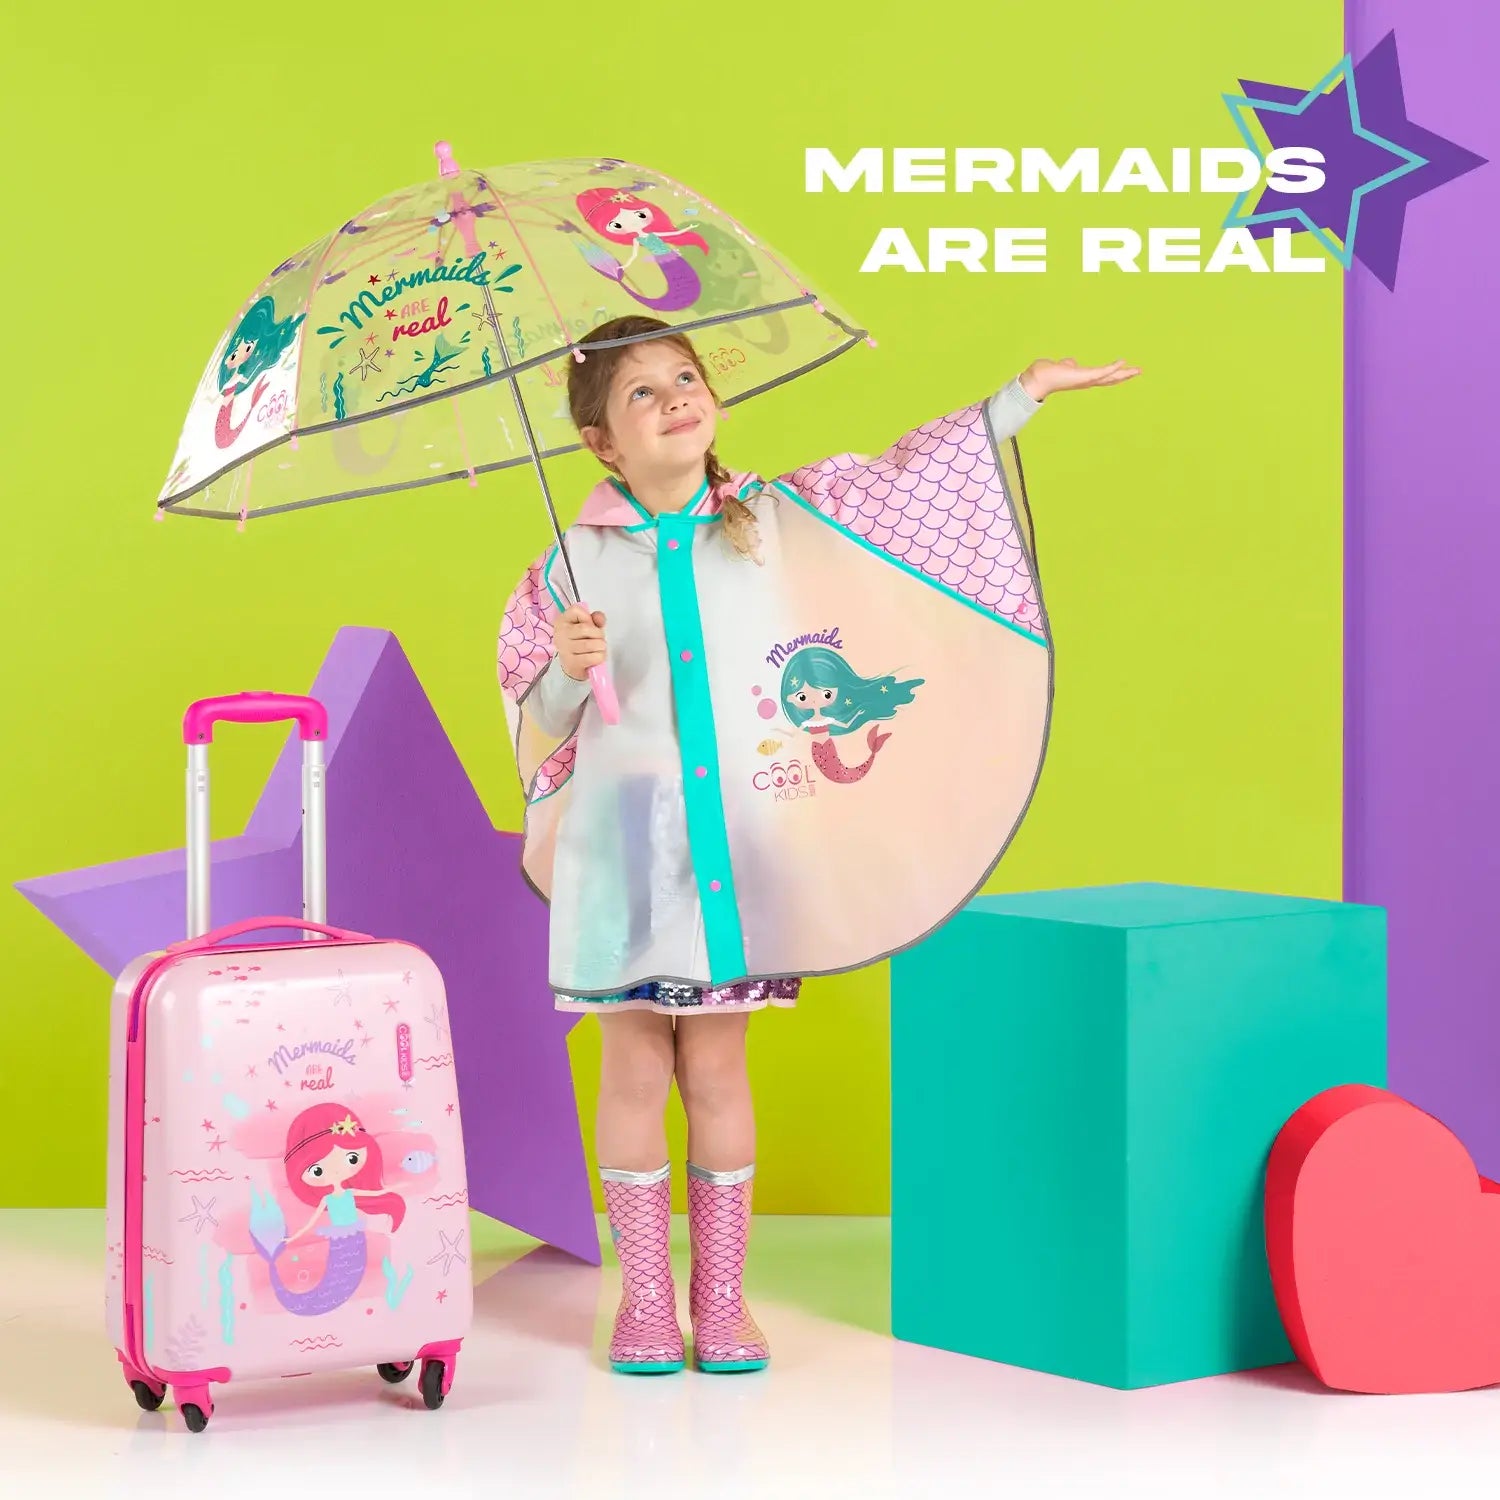 Regenponcho meisje zeemeermin Mermaid regenjas sfeerfoto meisje met regenjas